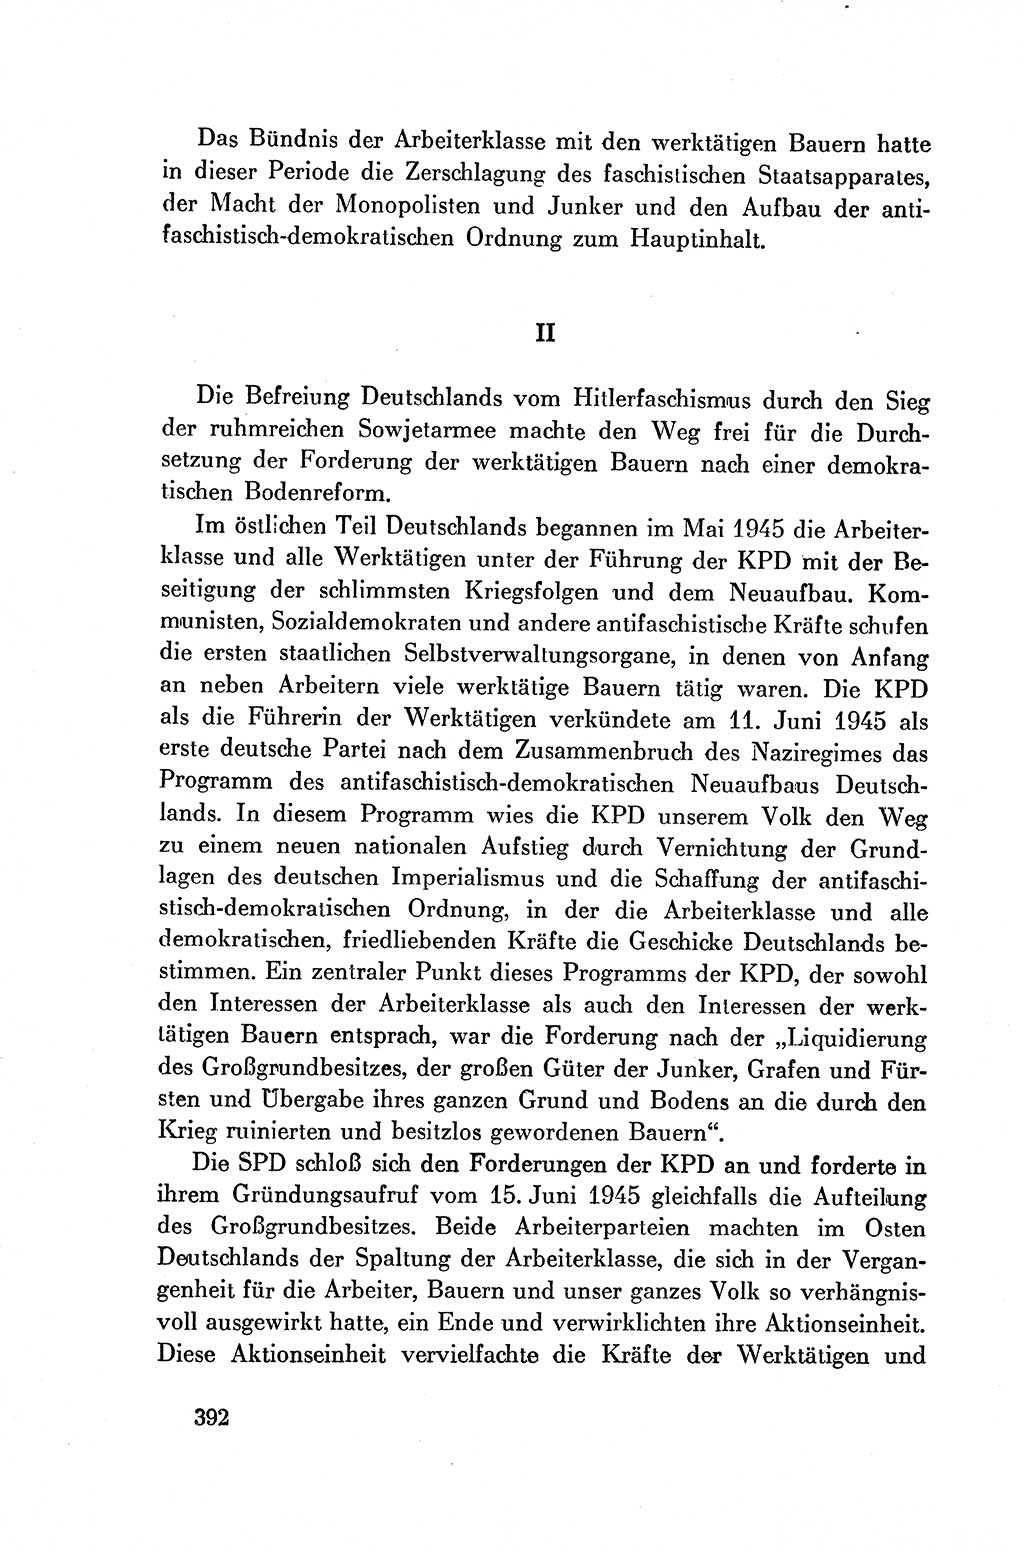 Dokumente der Sozialistischen Einheitspartei Deutschlands (SED) [Deutsche Demokratische Republik (DDR)] 1954-1955, Seite 392 (Dok. SED DDR 1954-1955, S. 392)